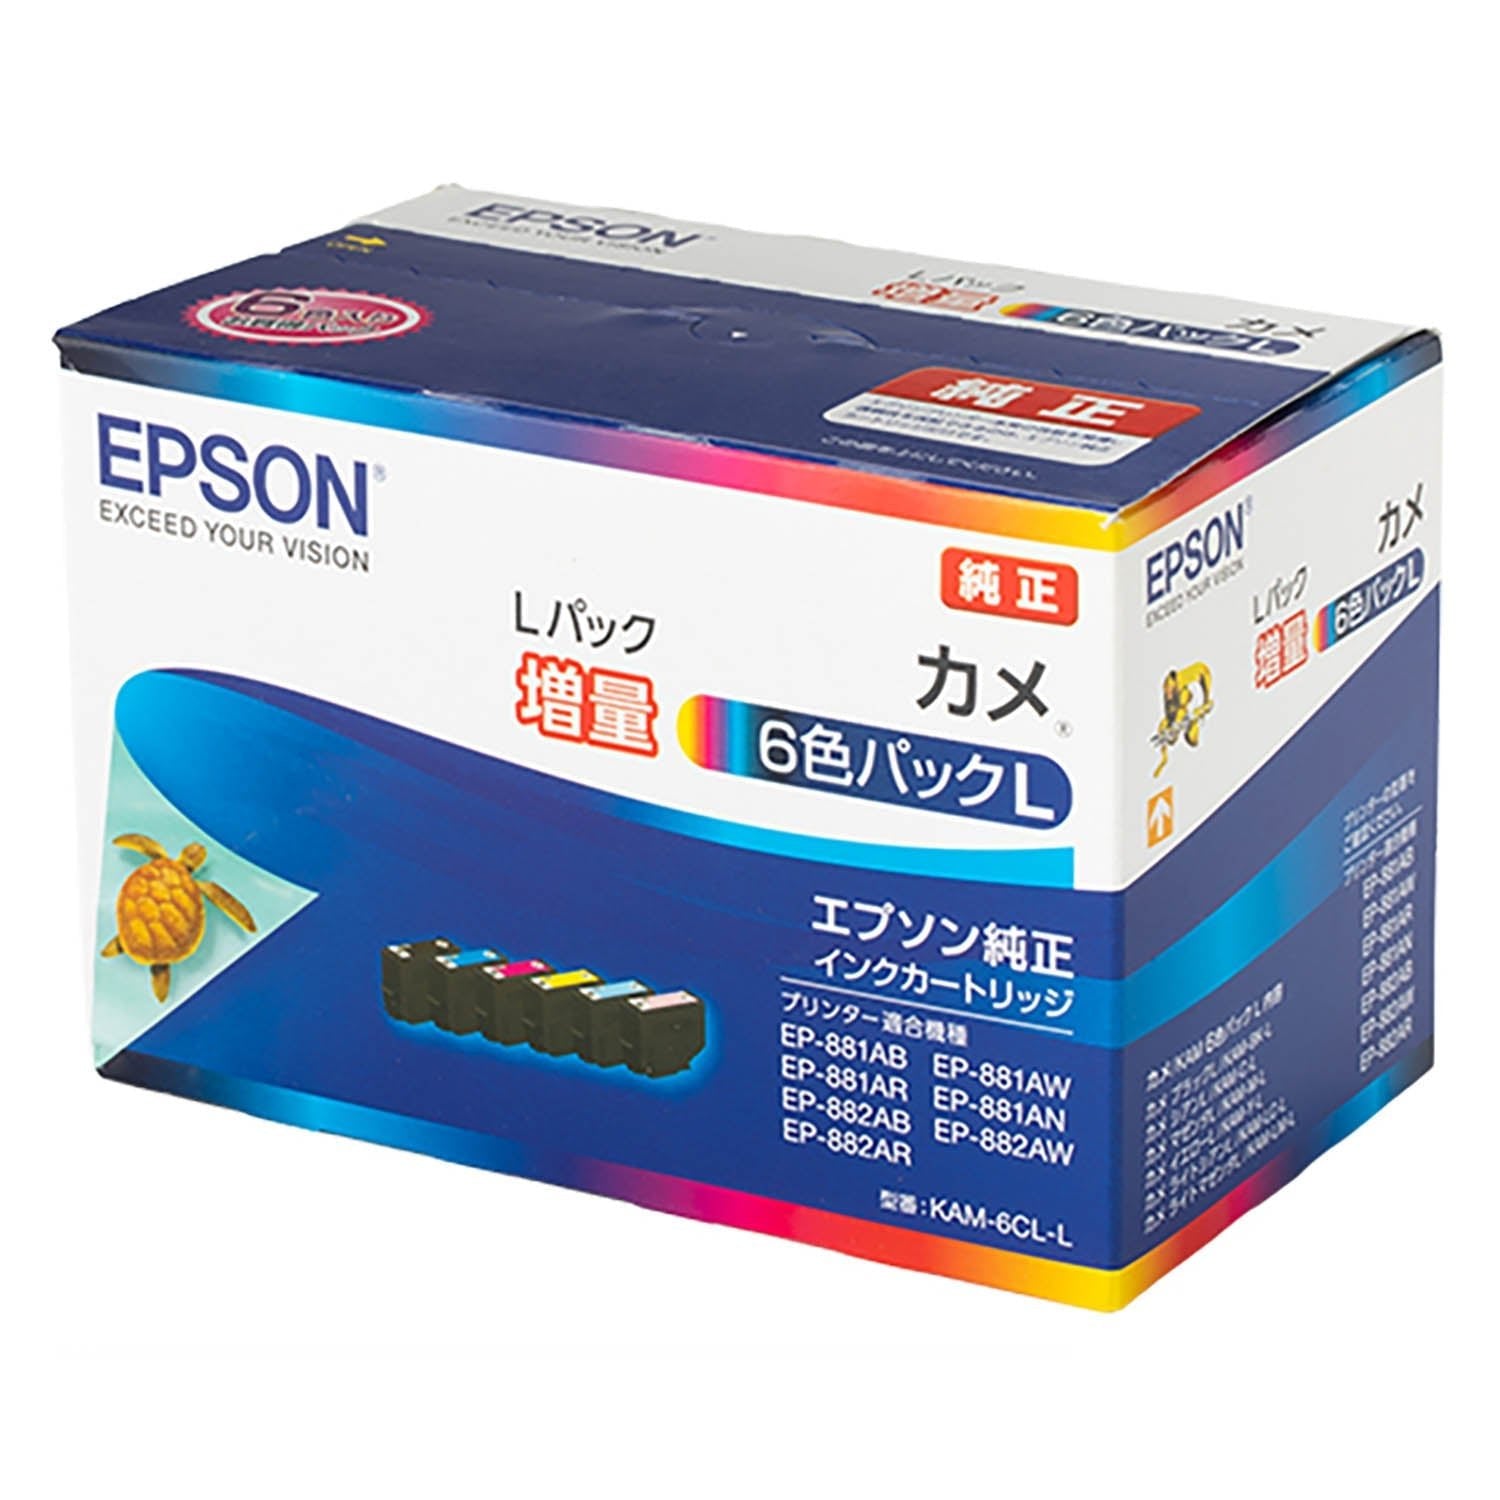 【純正品】EPSON インクカートリッジ KAM-6CL-L 6色パック 増量スマホ/家電/カメラ